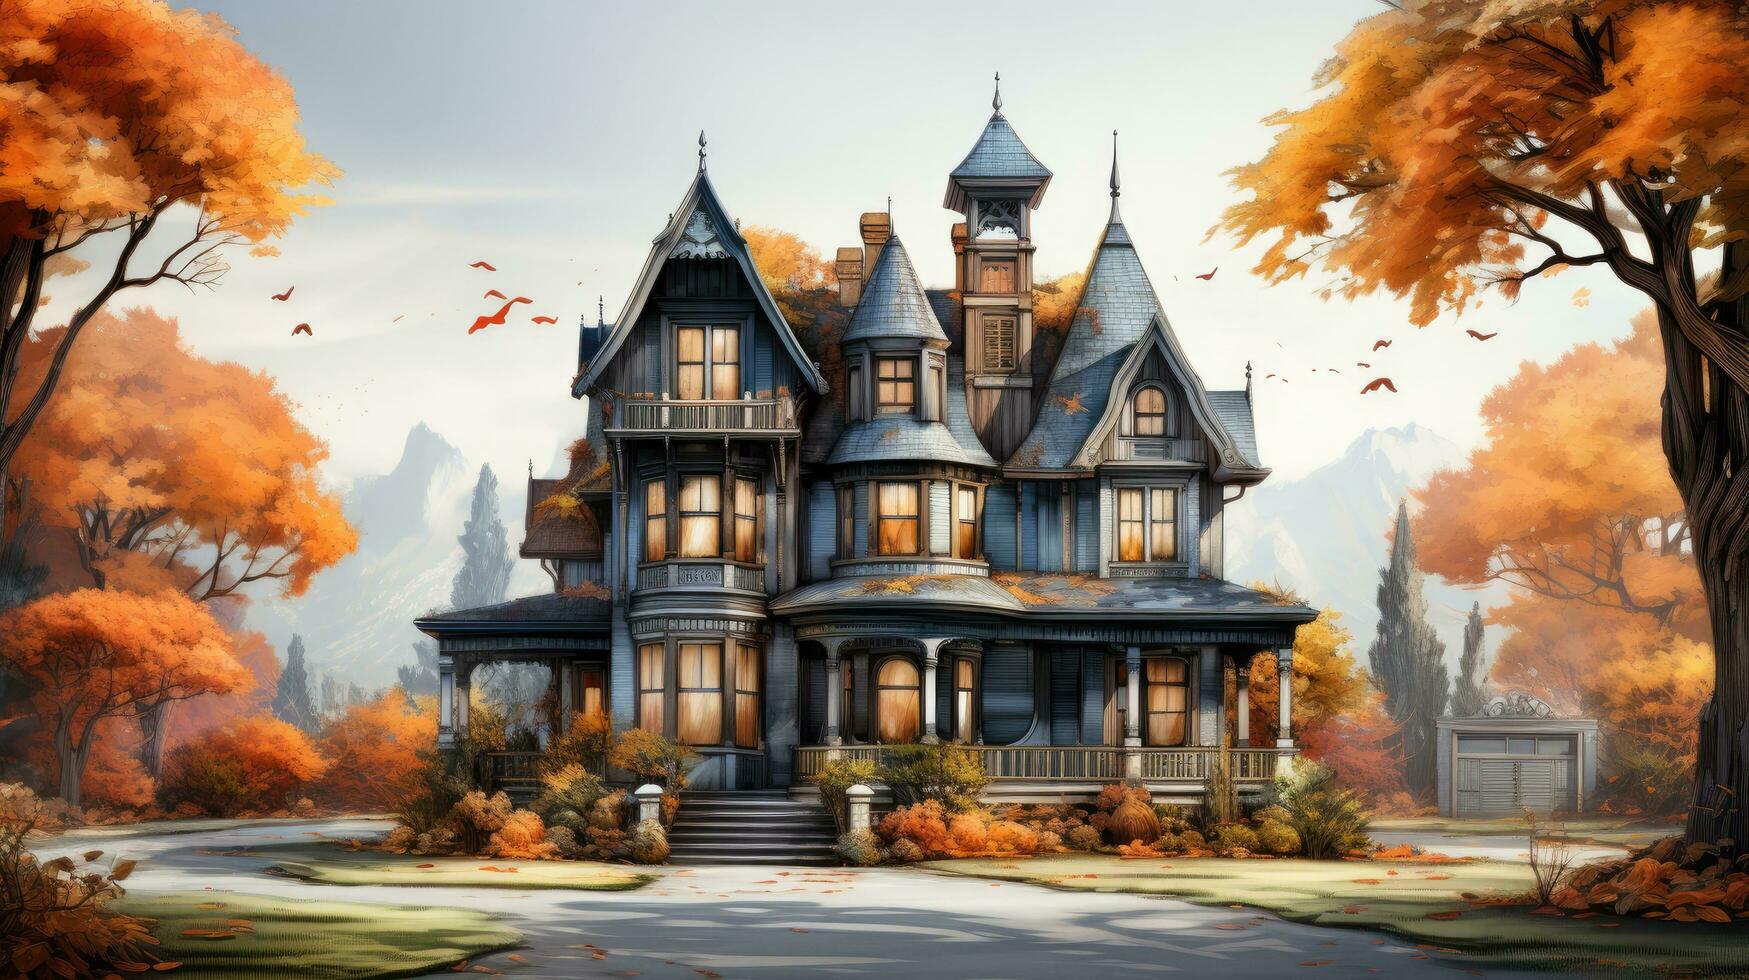 kuslig skrämmande stor hus herrgård slott på en vit bakgrund, illustration för de Semester halloween foto